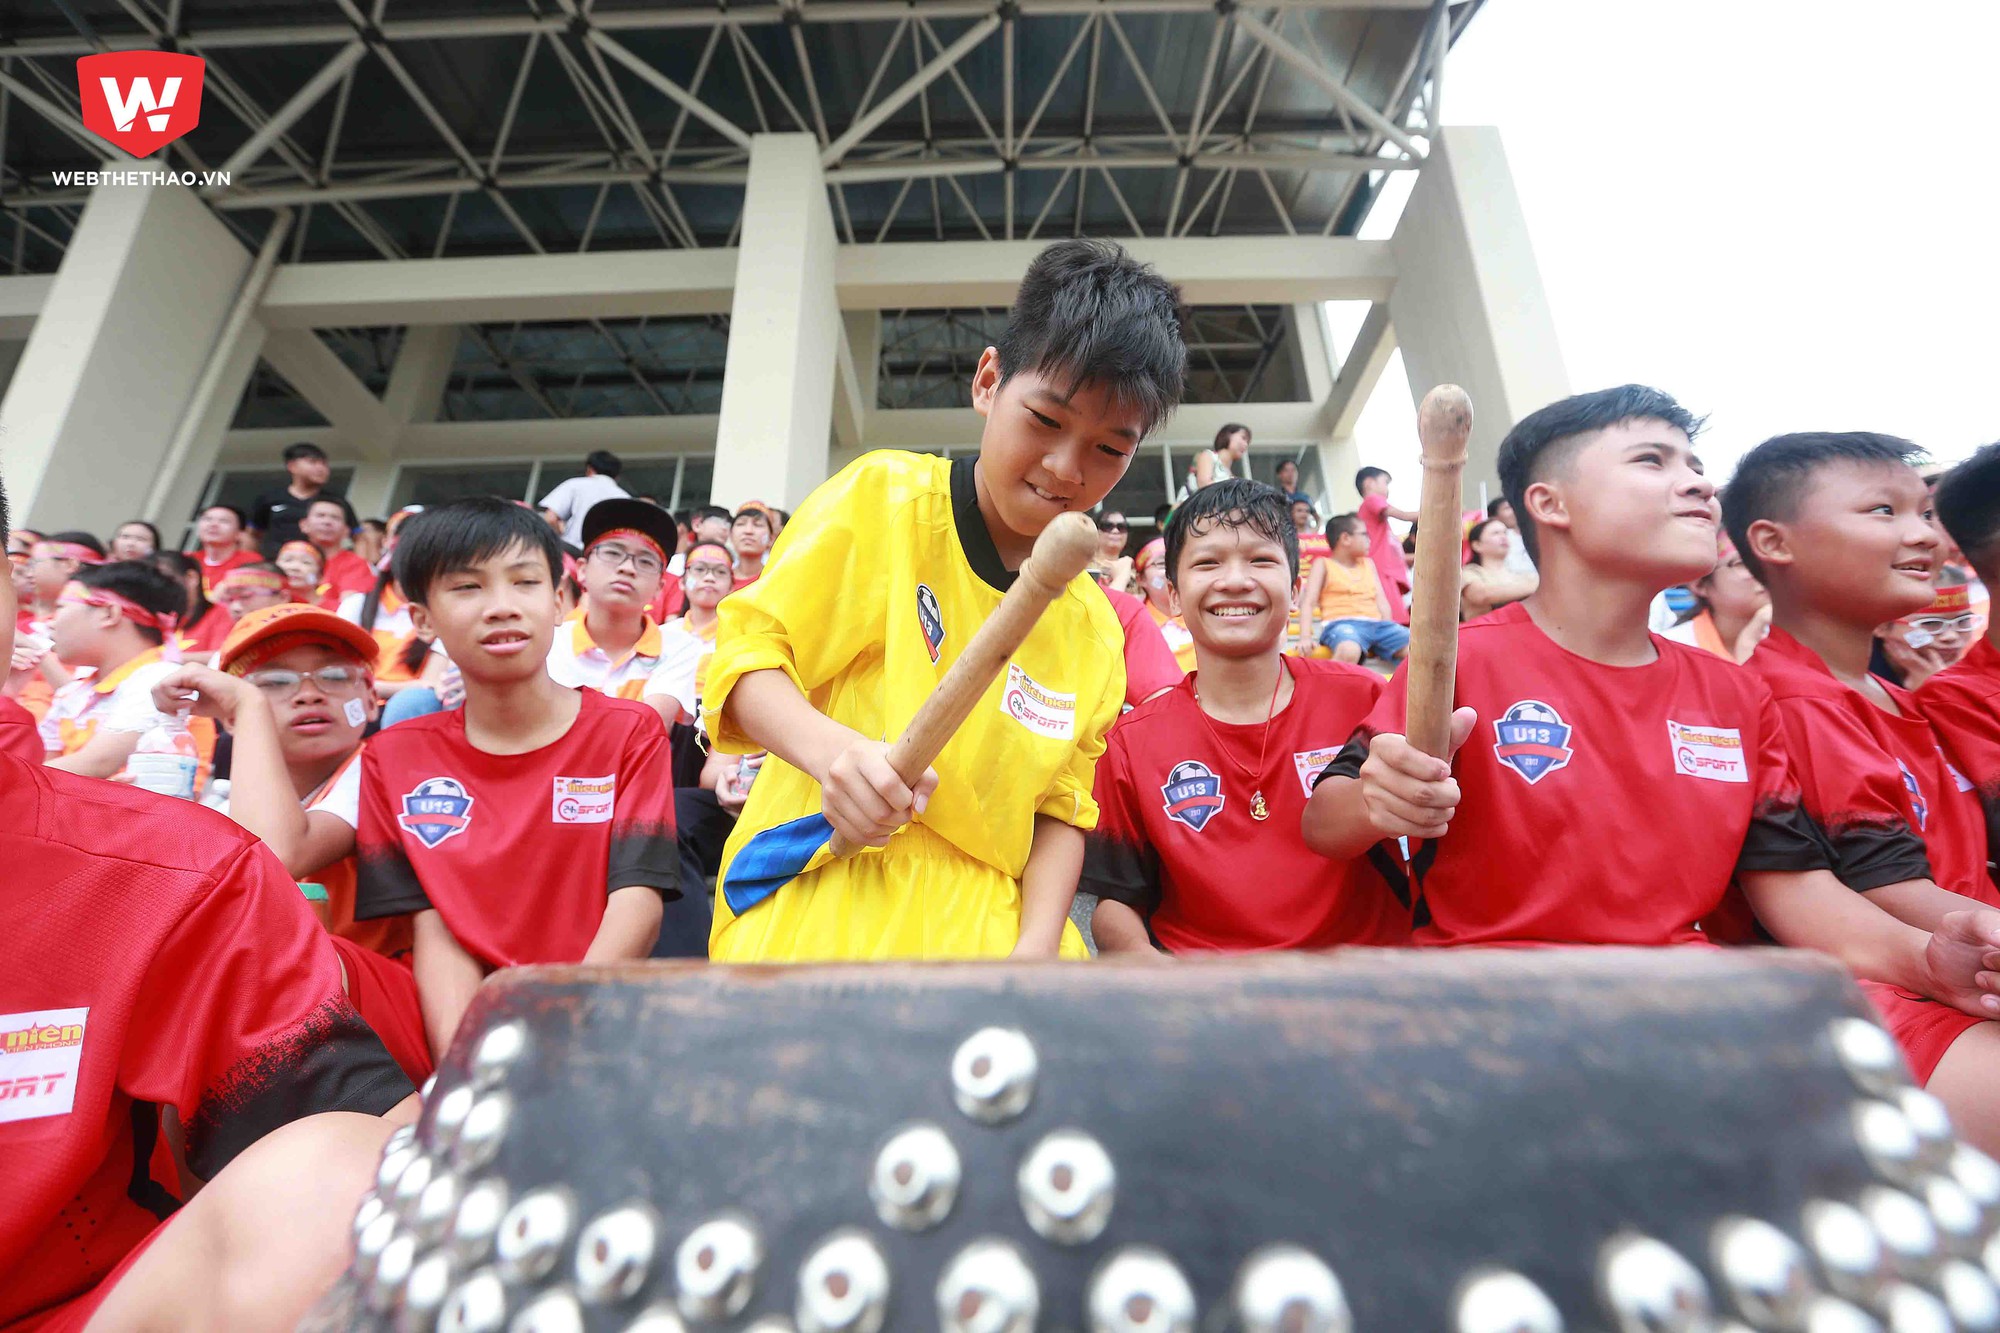 Chính những âm thanh này đã khiến cho khán đài sân bóng thuộc trung tâm đào tạo bsong đá trẻ Việt Nam luôn sôi động, rộn ràng trong suốt thời gian thi đấu của trận bán kết 2.